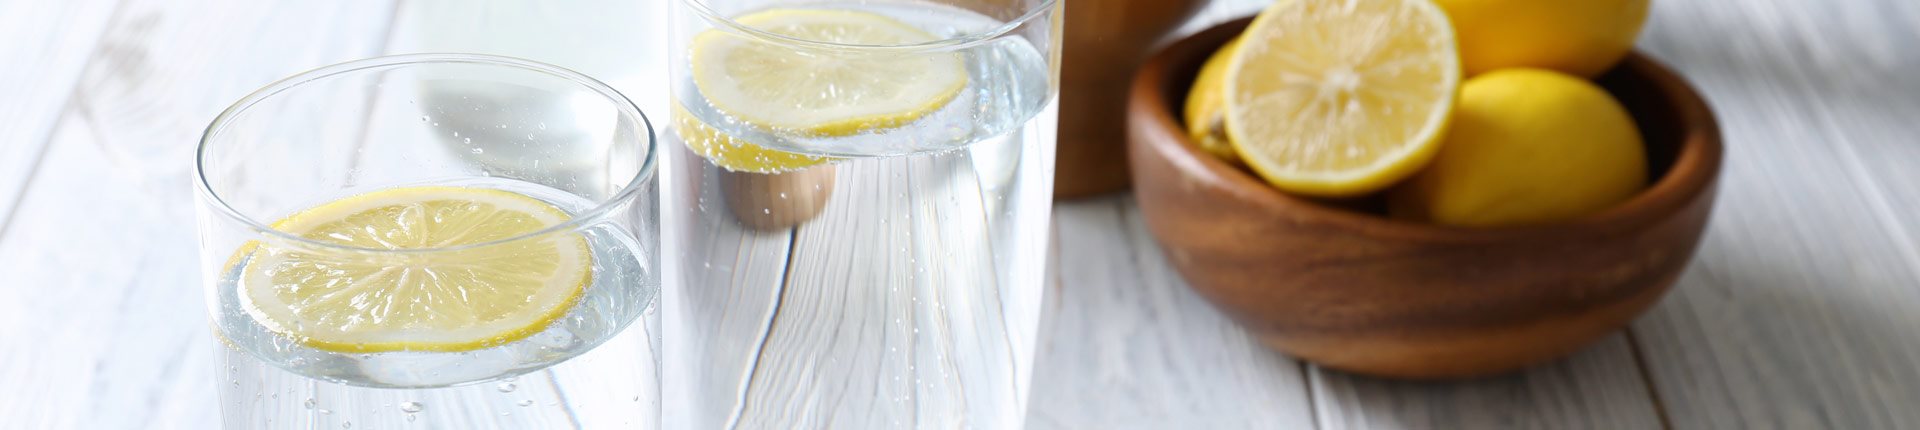 Czy przed posiłkami warto pic wodę z cytryną?